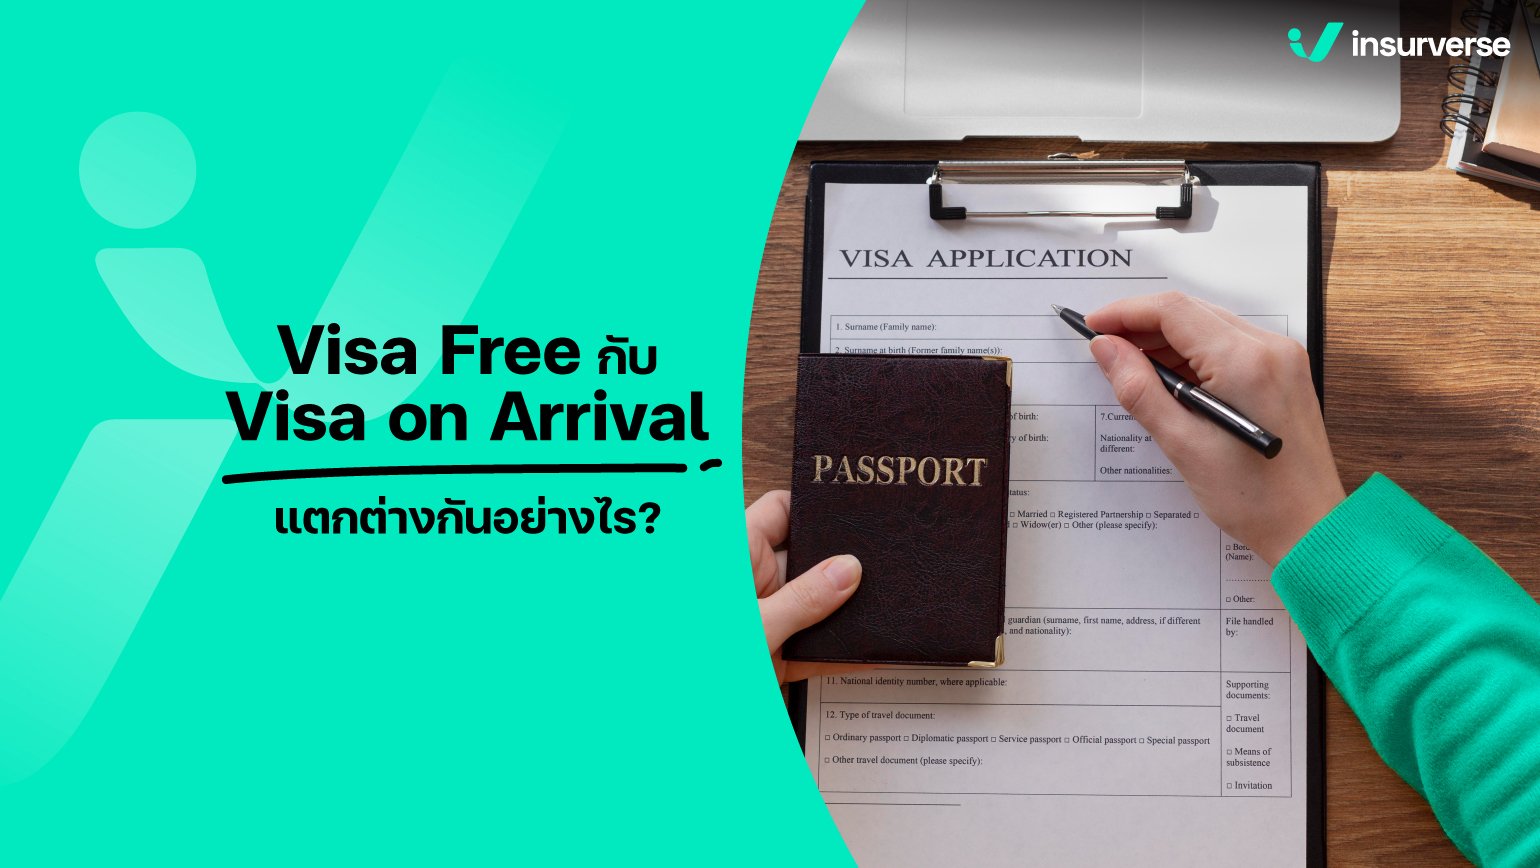 เคลียร์ชัดทุกข้อมูลเที่ยว Visa Free กับ on Arrival แตกต่างกันอย่างไร?